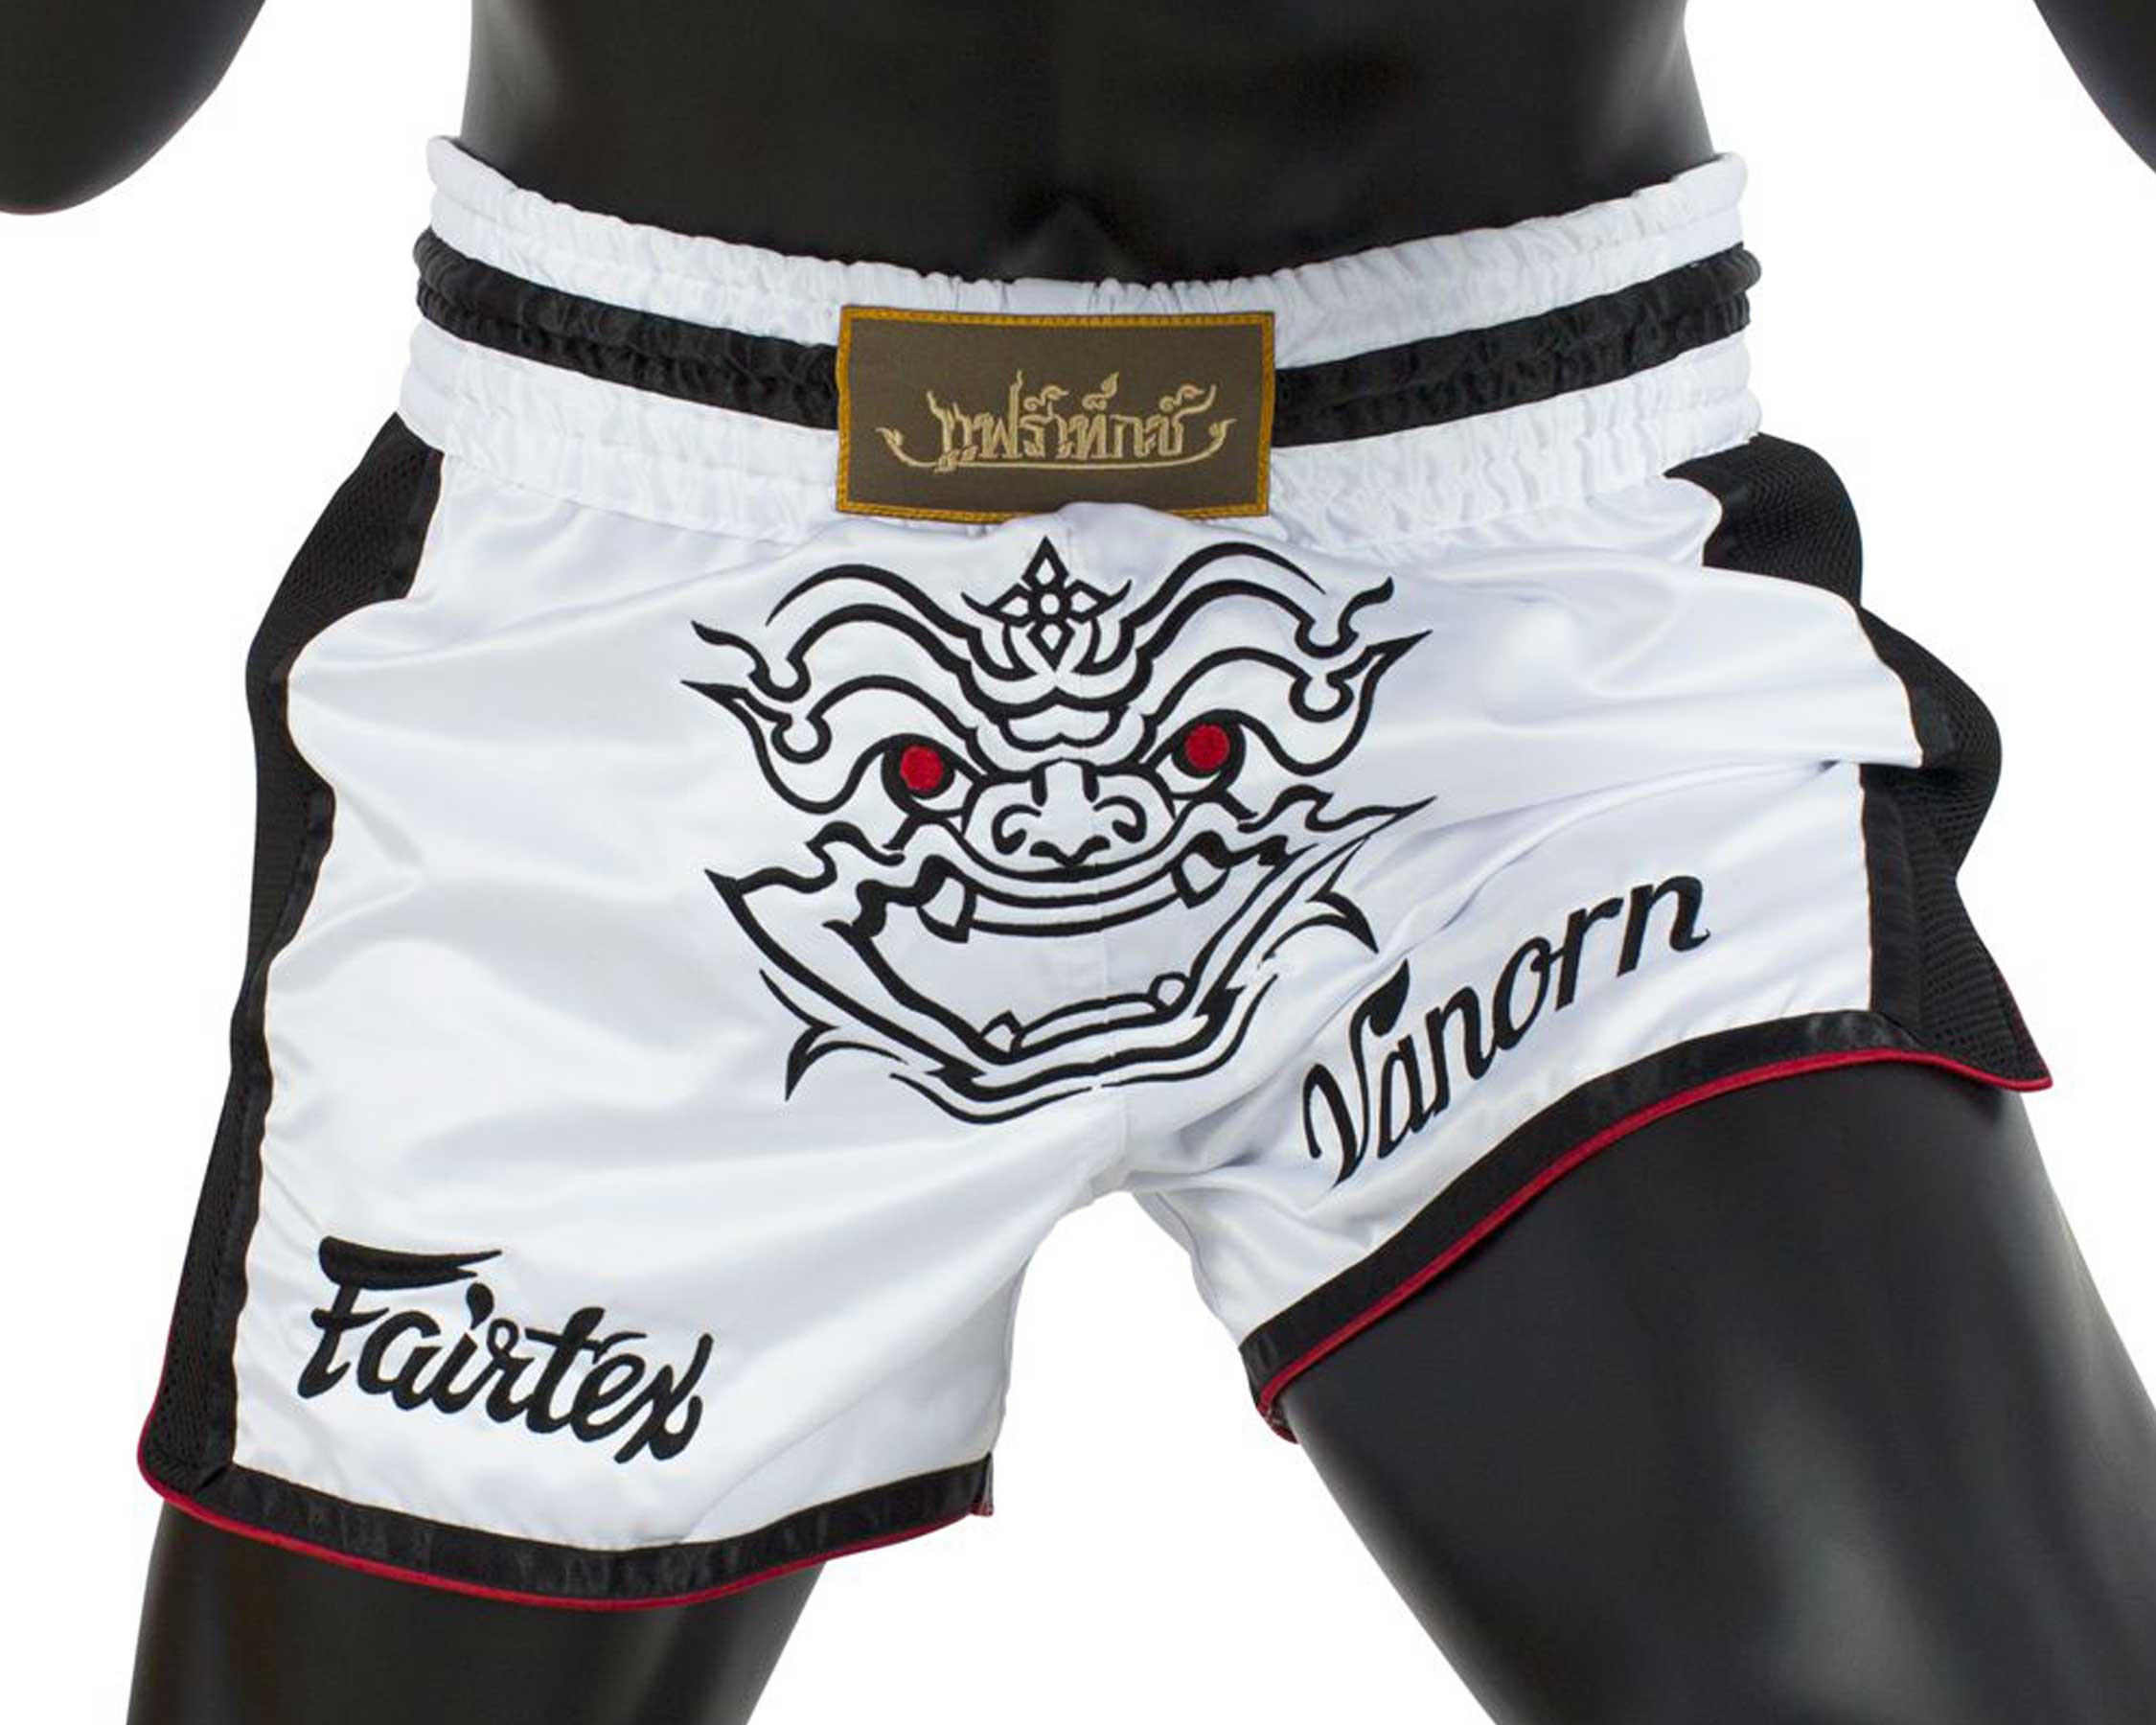 Fairtex BS1712 muay thai shorts Varnon - Gym- and Ringwear - Fairtex, Muay  Thai and MMA Shop